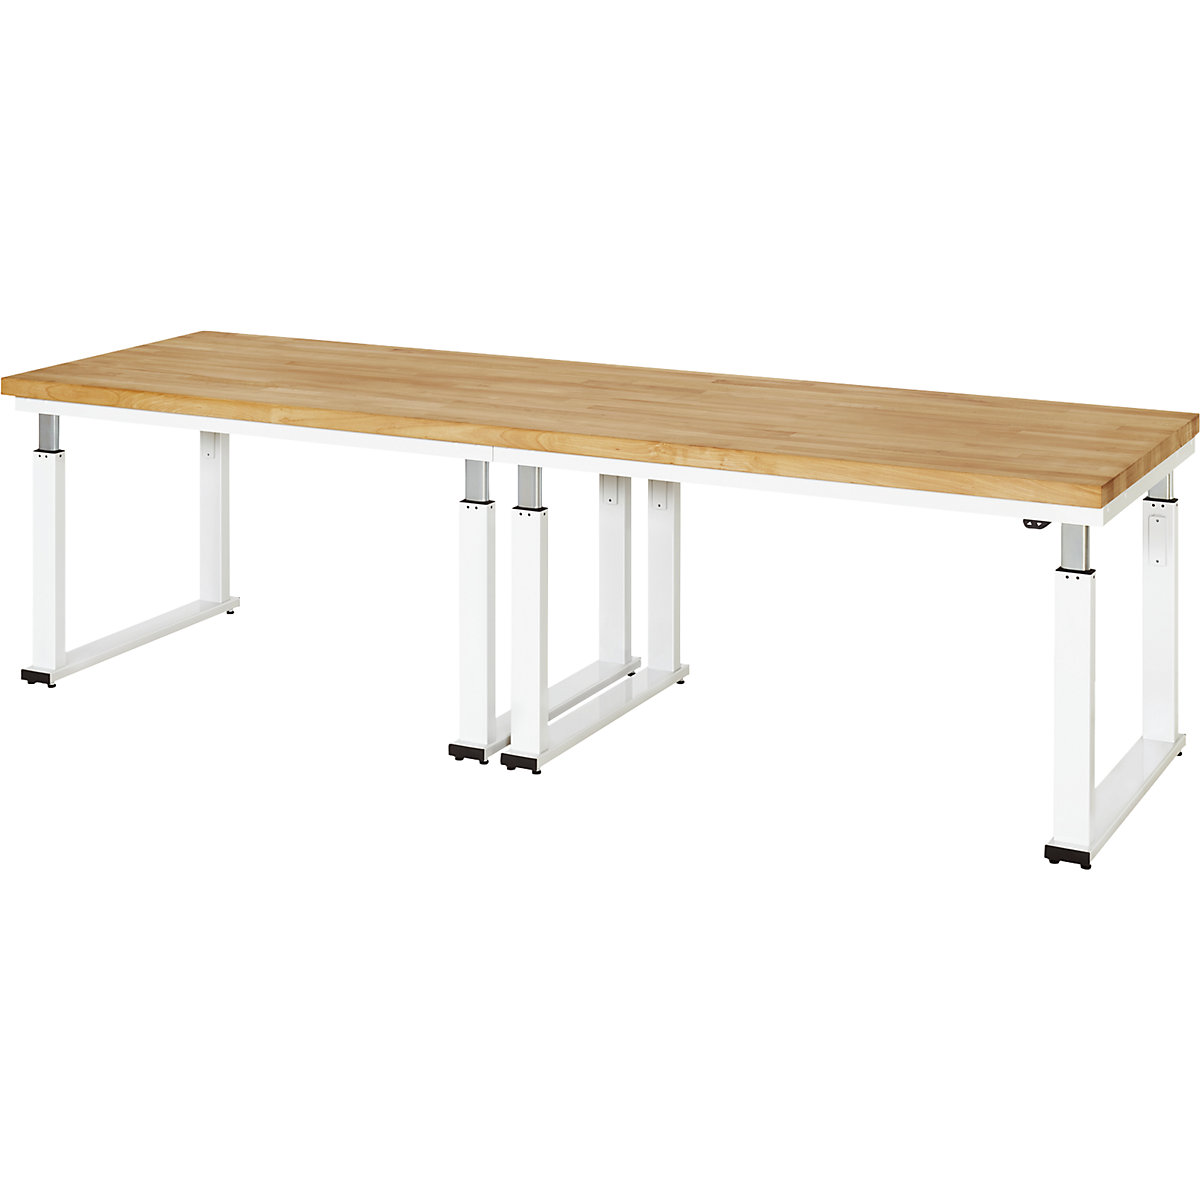 Psací stůl s elektrickým přestavováním výšky – RAU, bukový masiv, nosnost 600 kg, š x h 3000 x 900 mm-10